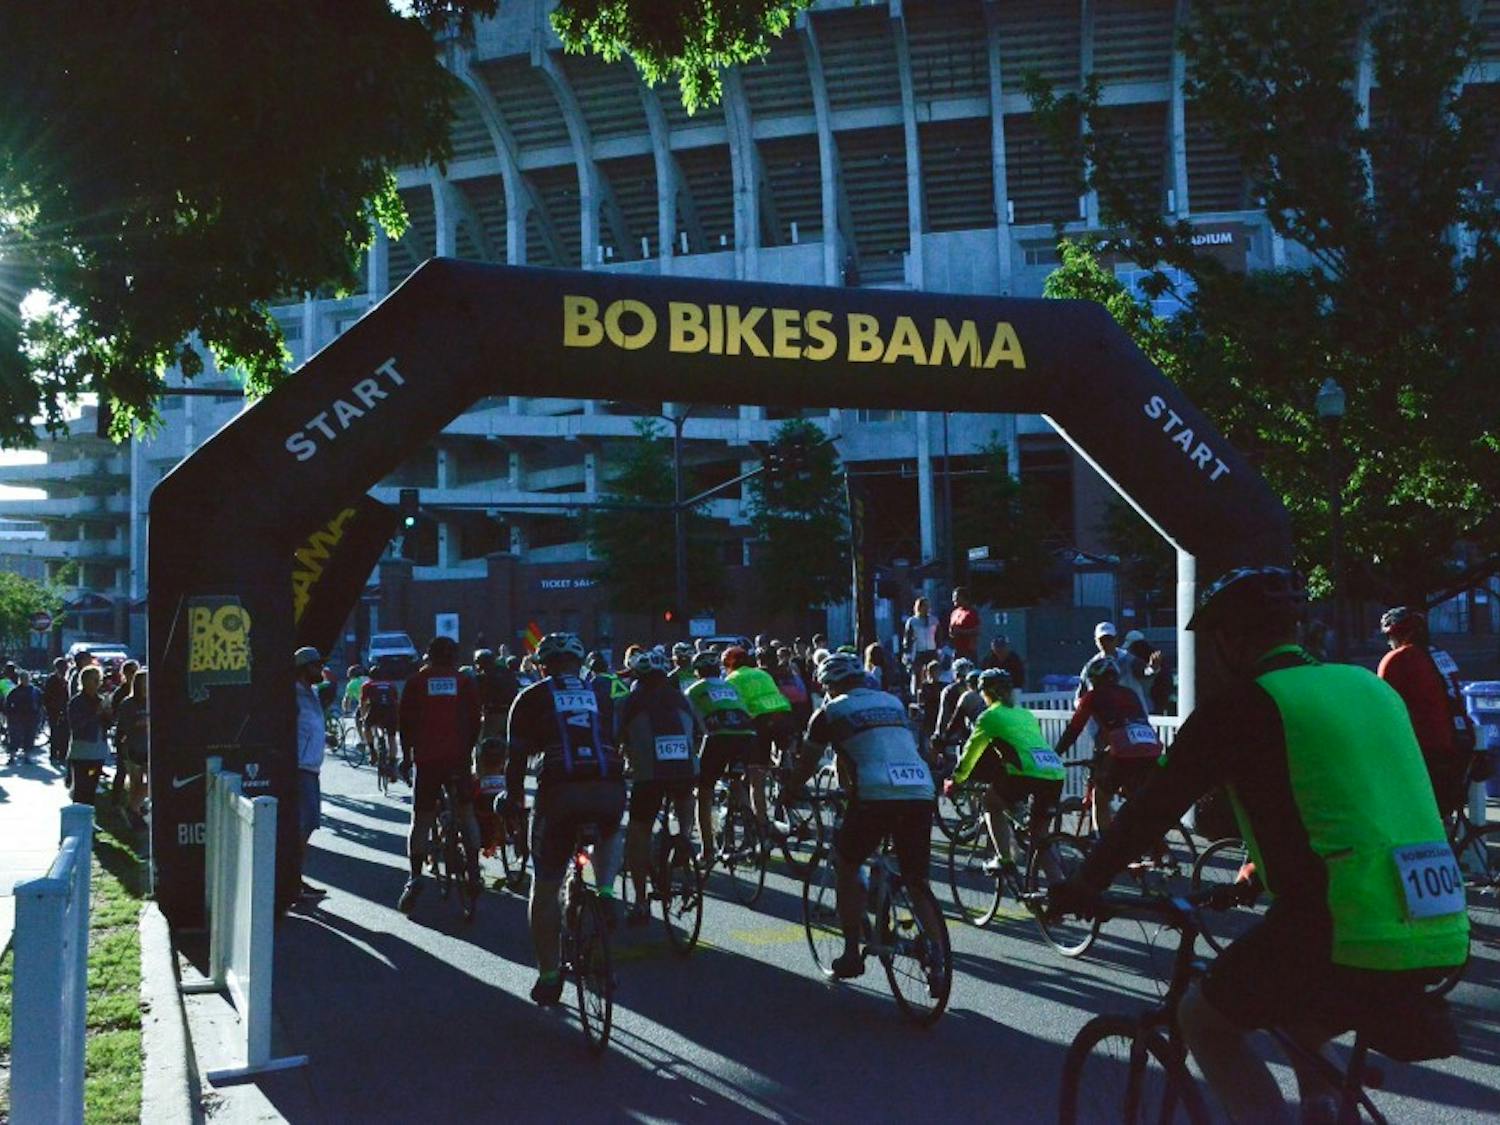 Bo Bikes Bama